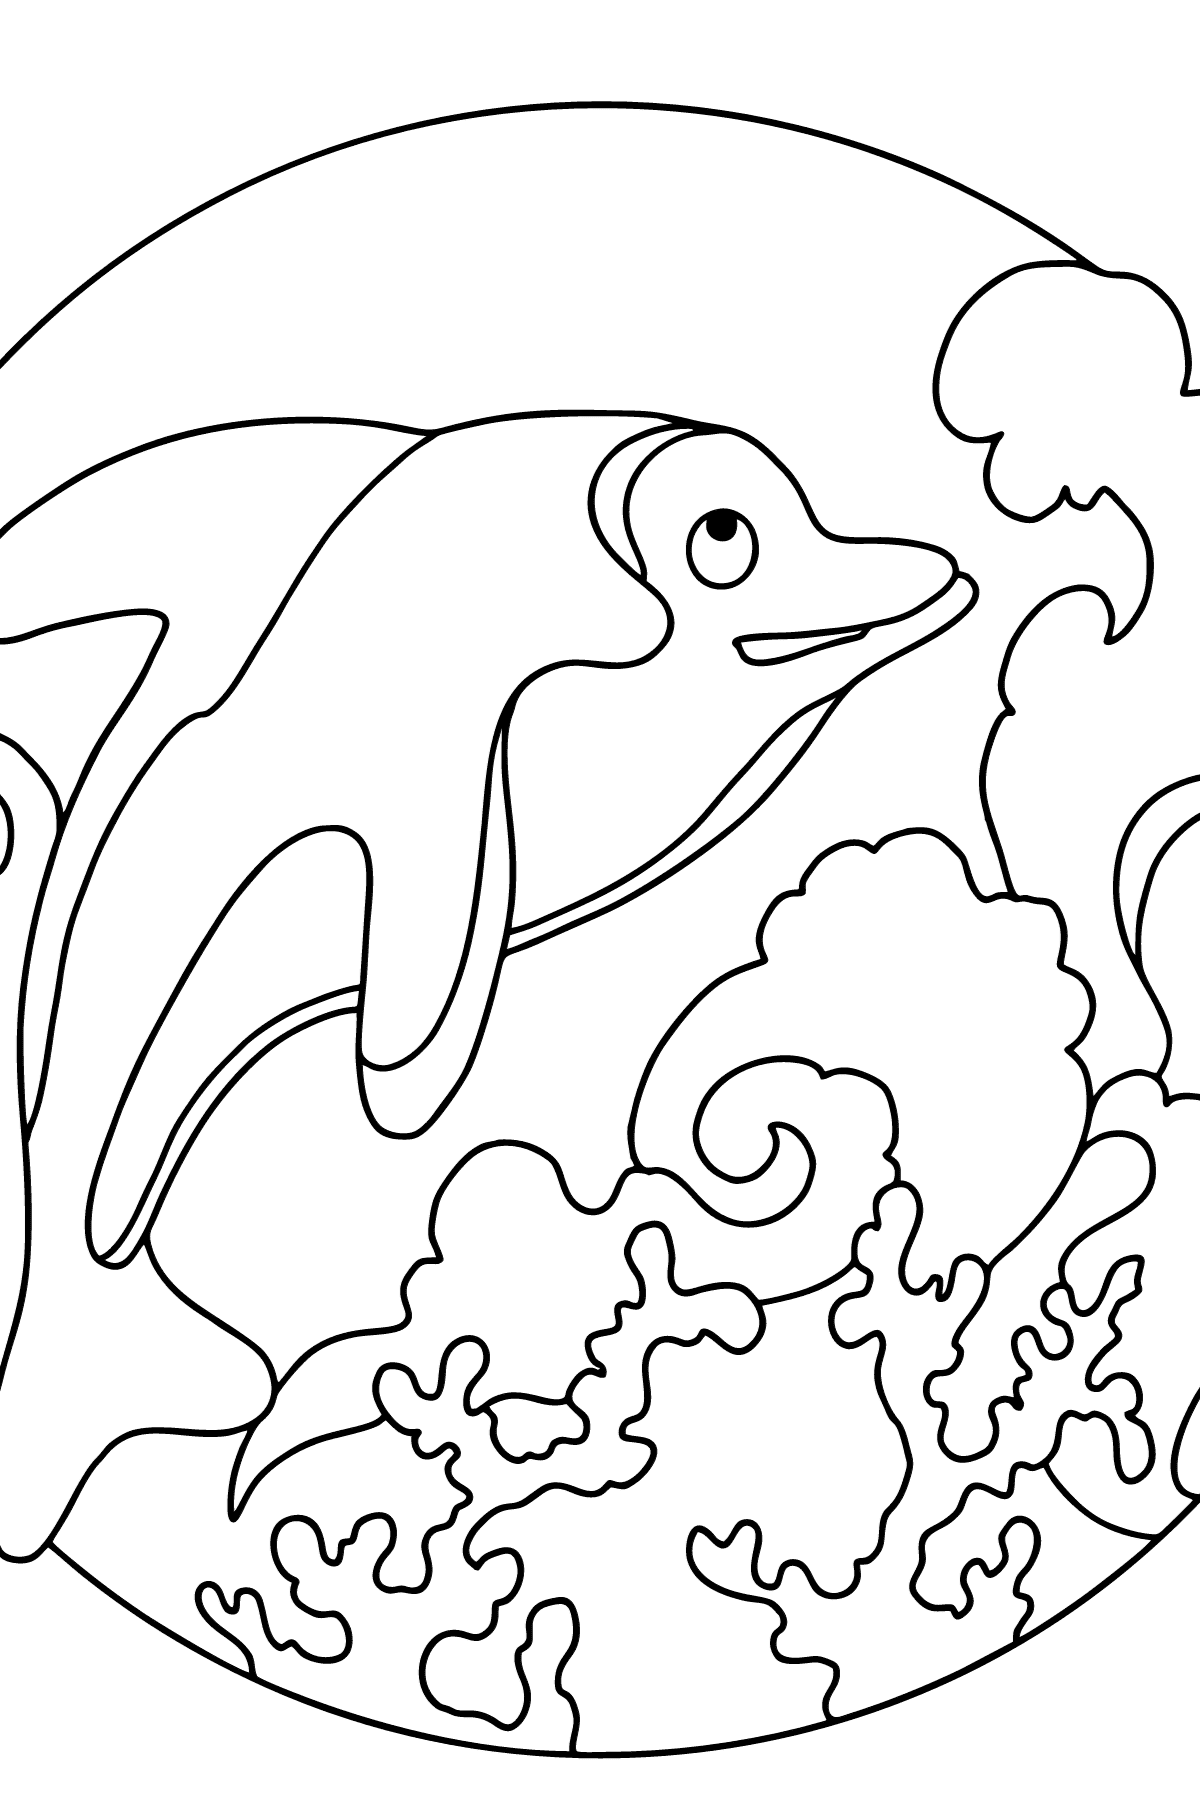 Раскраска Дельфин для детей - Картинки для Детей